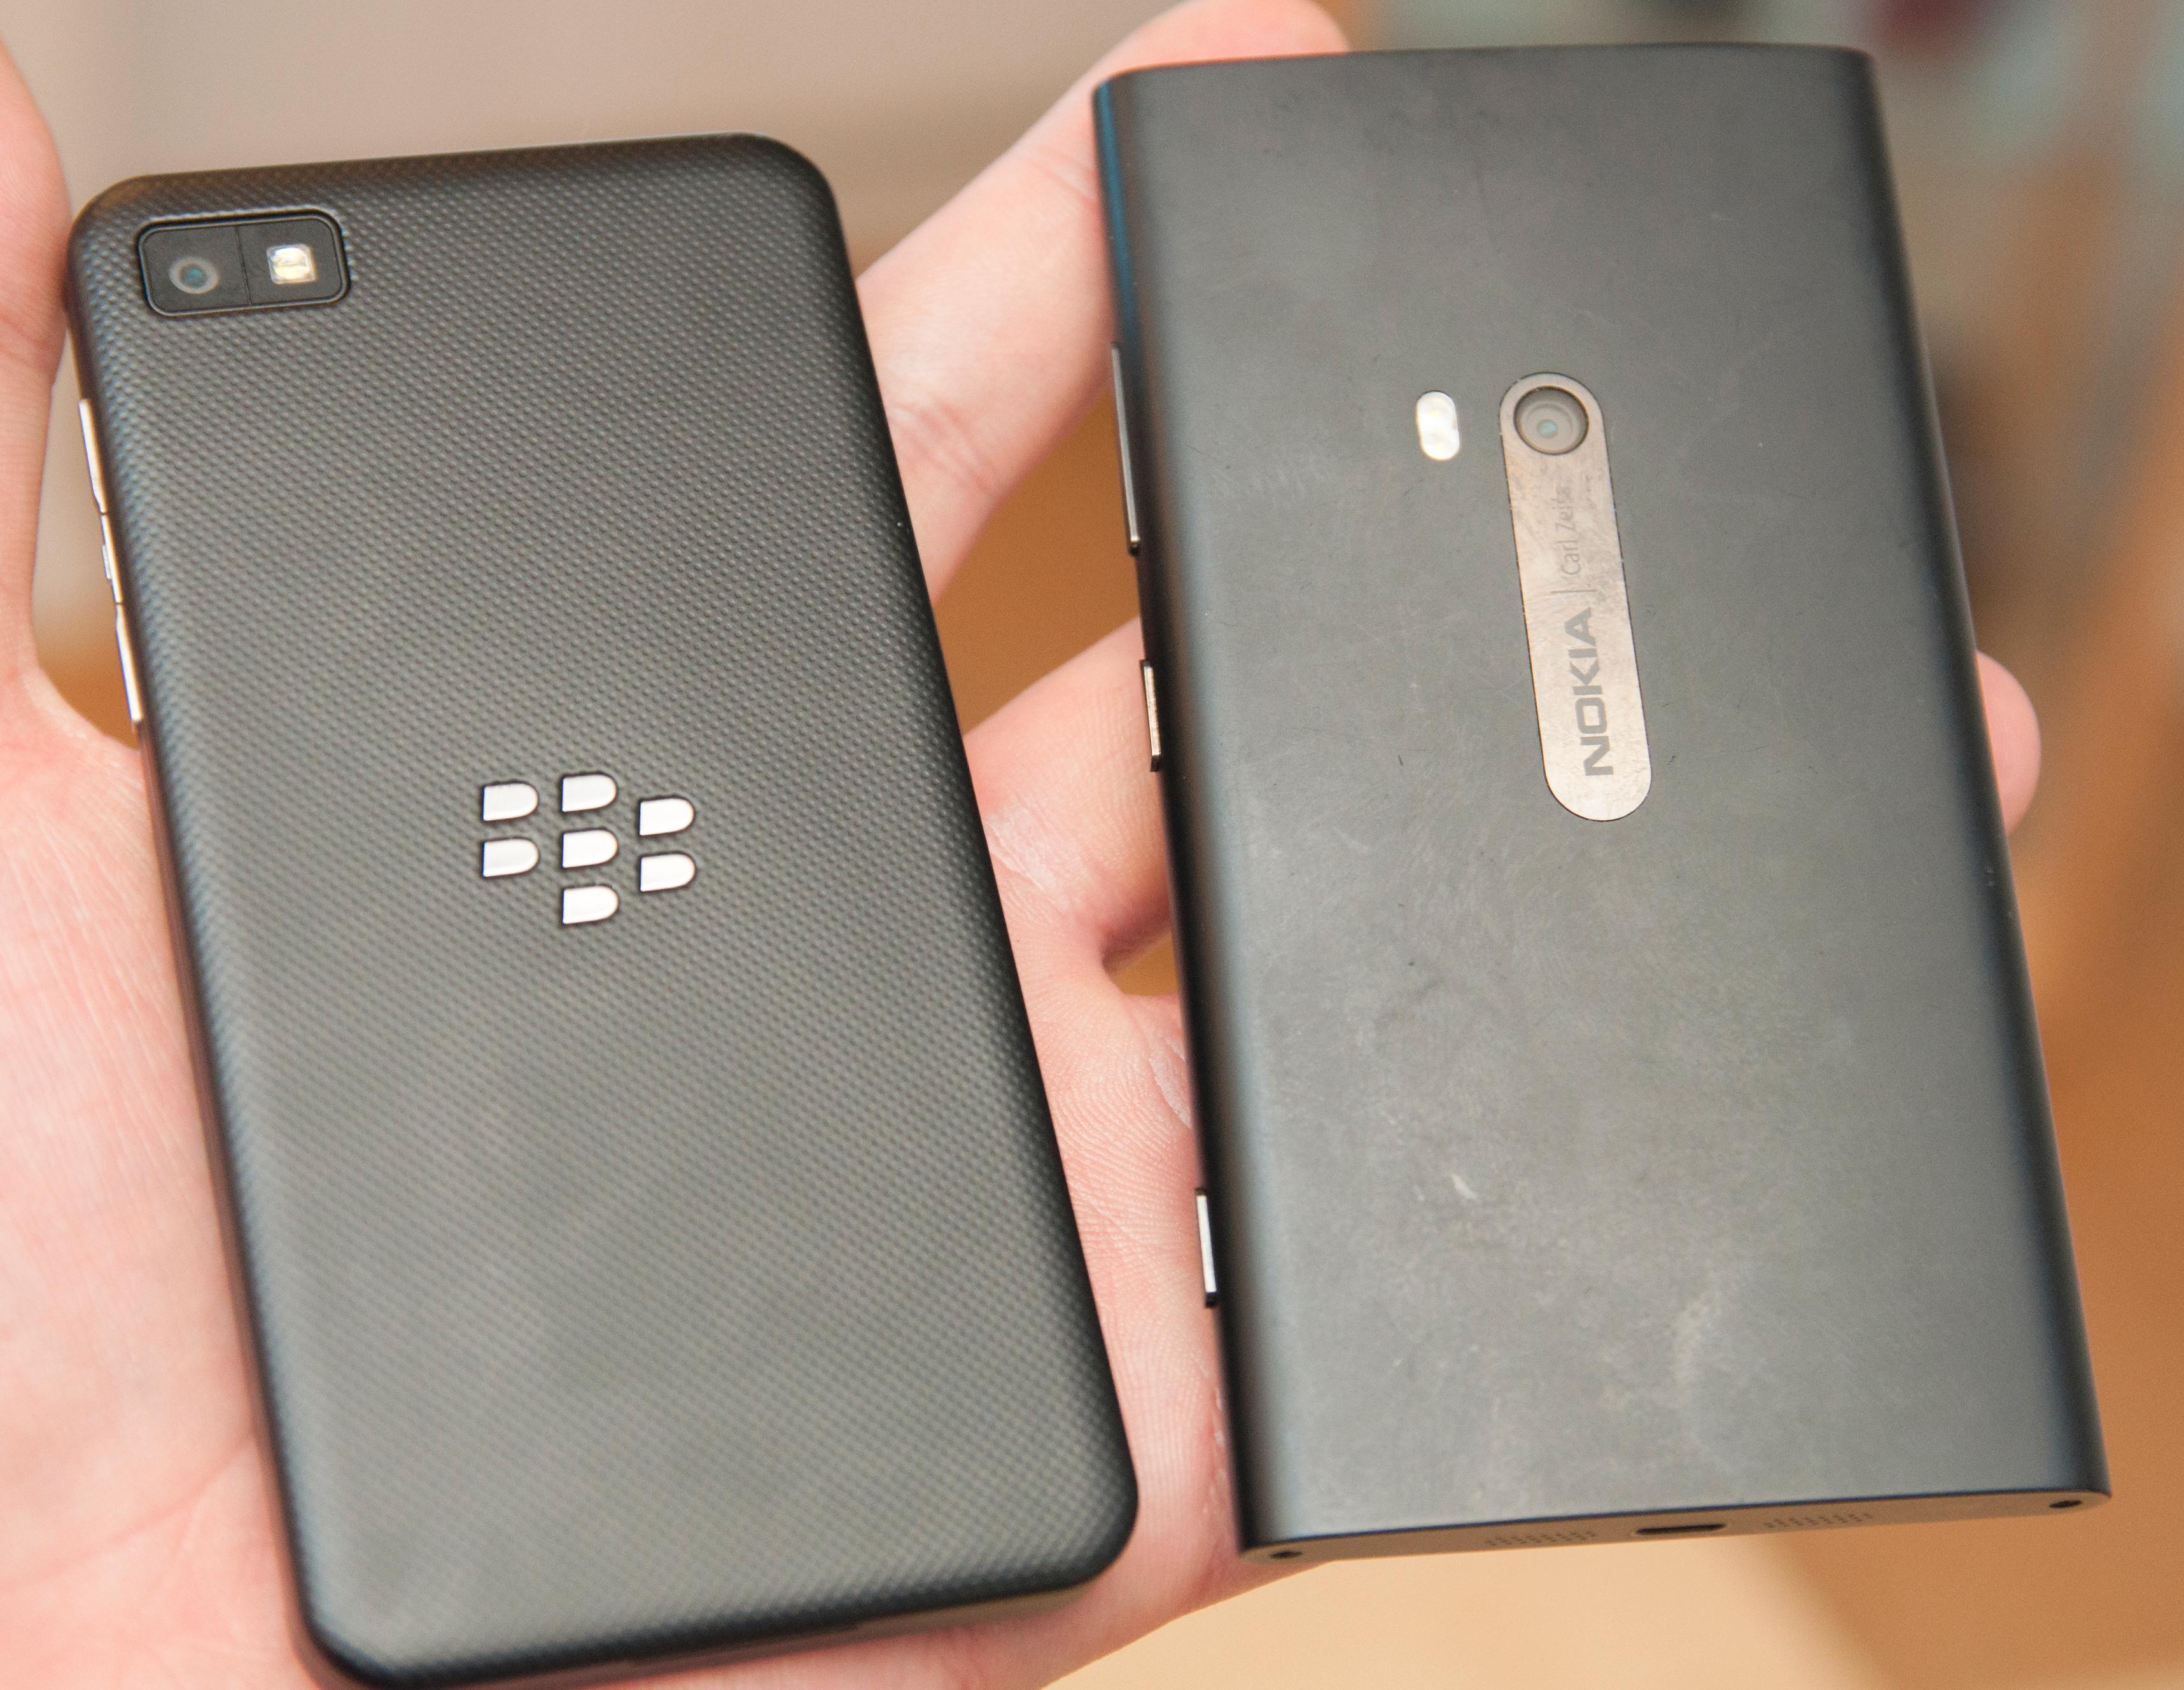 Slik ser baksiden på BlackBerry Z10 ut ved siden av en Nokia Lumia 920. Bakdekselet er avtagbart og skjuler batteri, plass for SIM-kort og minnekort.Foto: Finn Jarle Kvalheim, Amobil.no